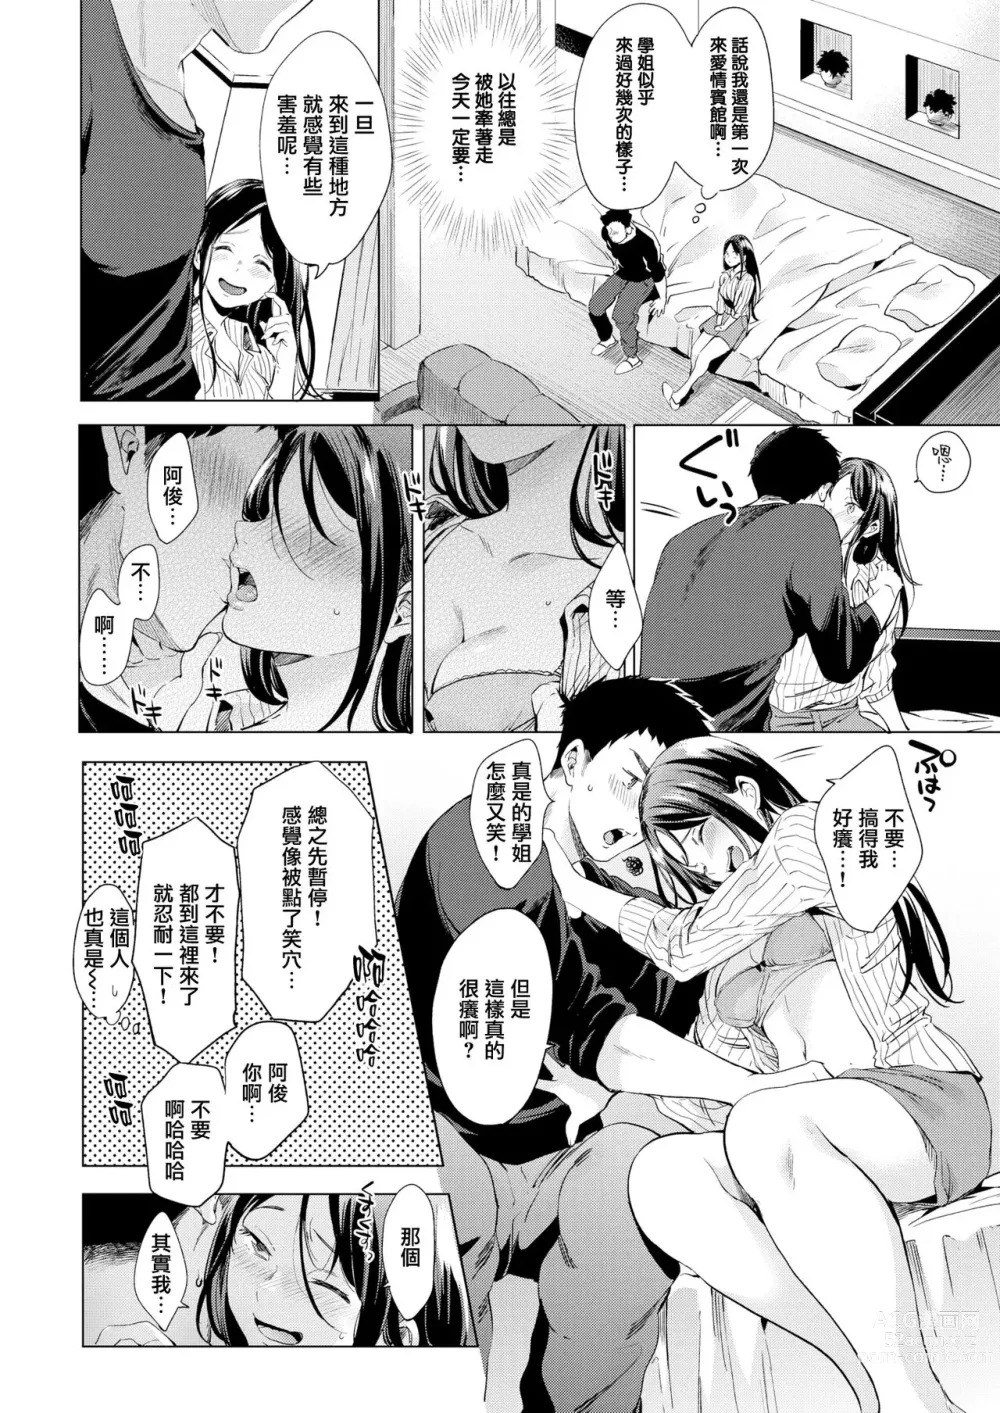 Page 3 of manga Kaikan Switch